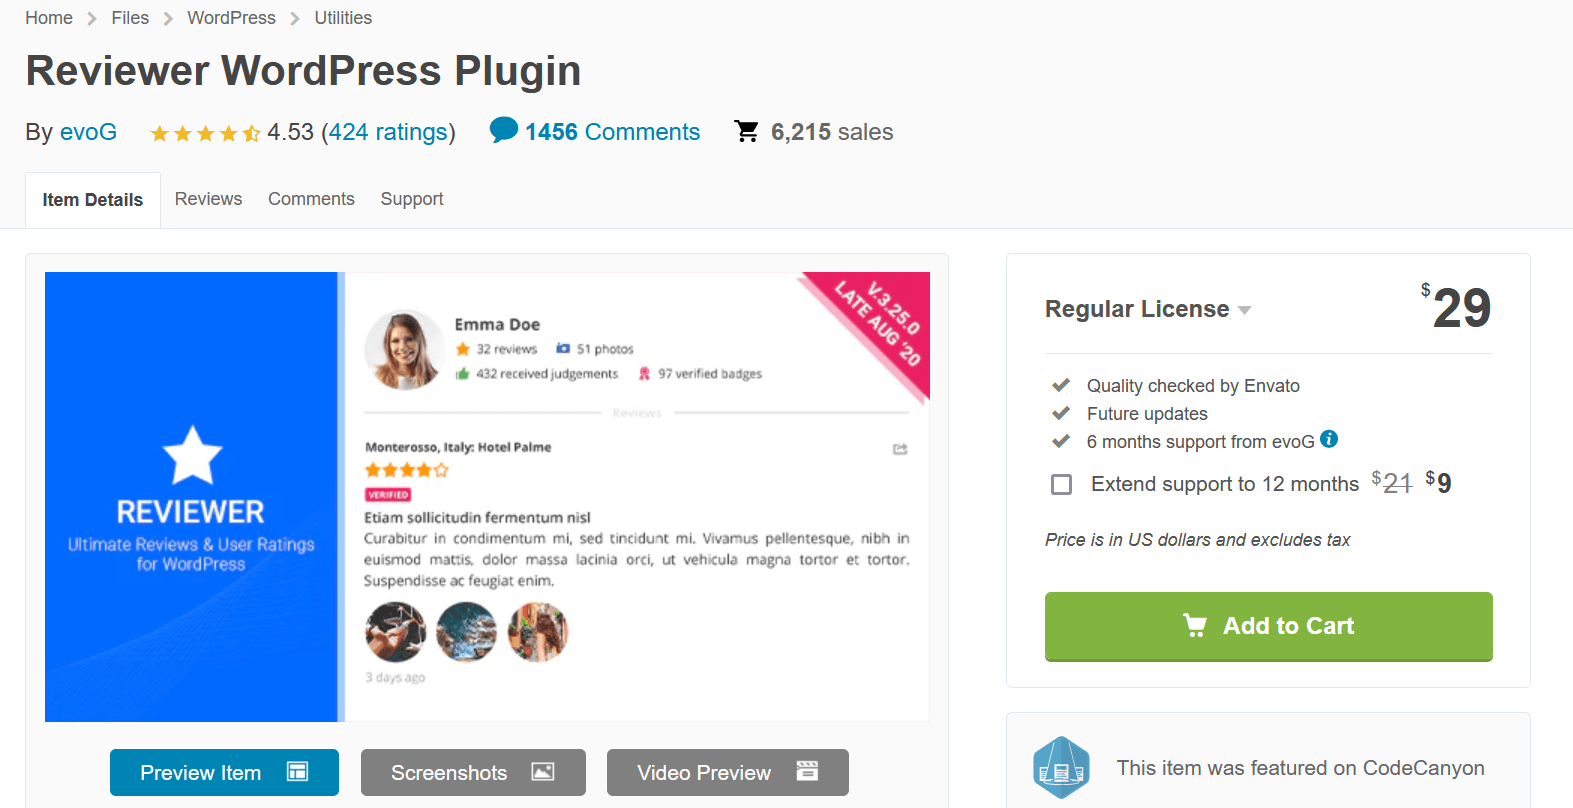 Reviewer WordPress Plugin ist ein lohnendes Premium-Plugin mit vielen Review-Funktionen